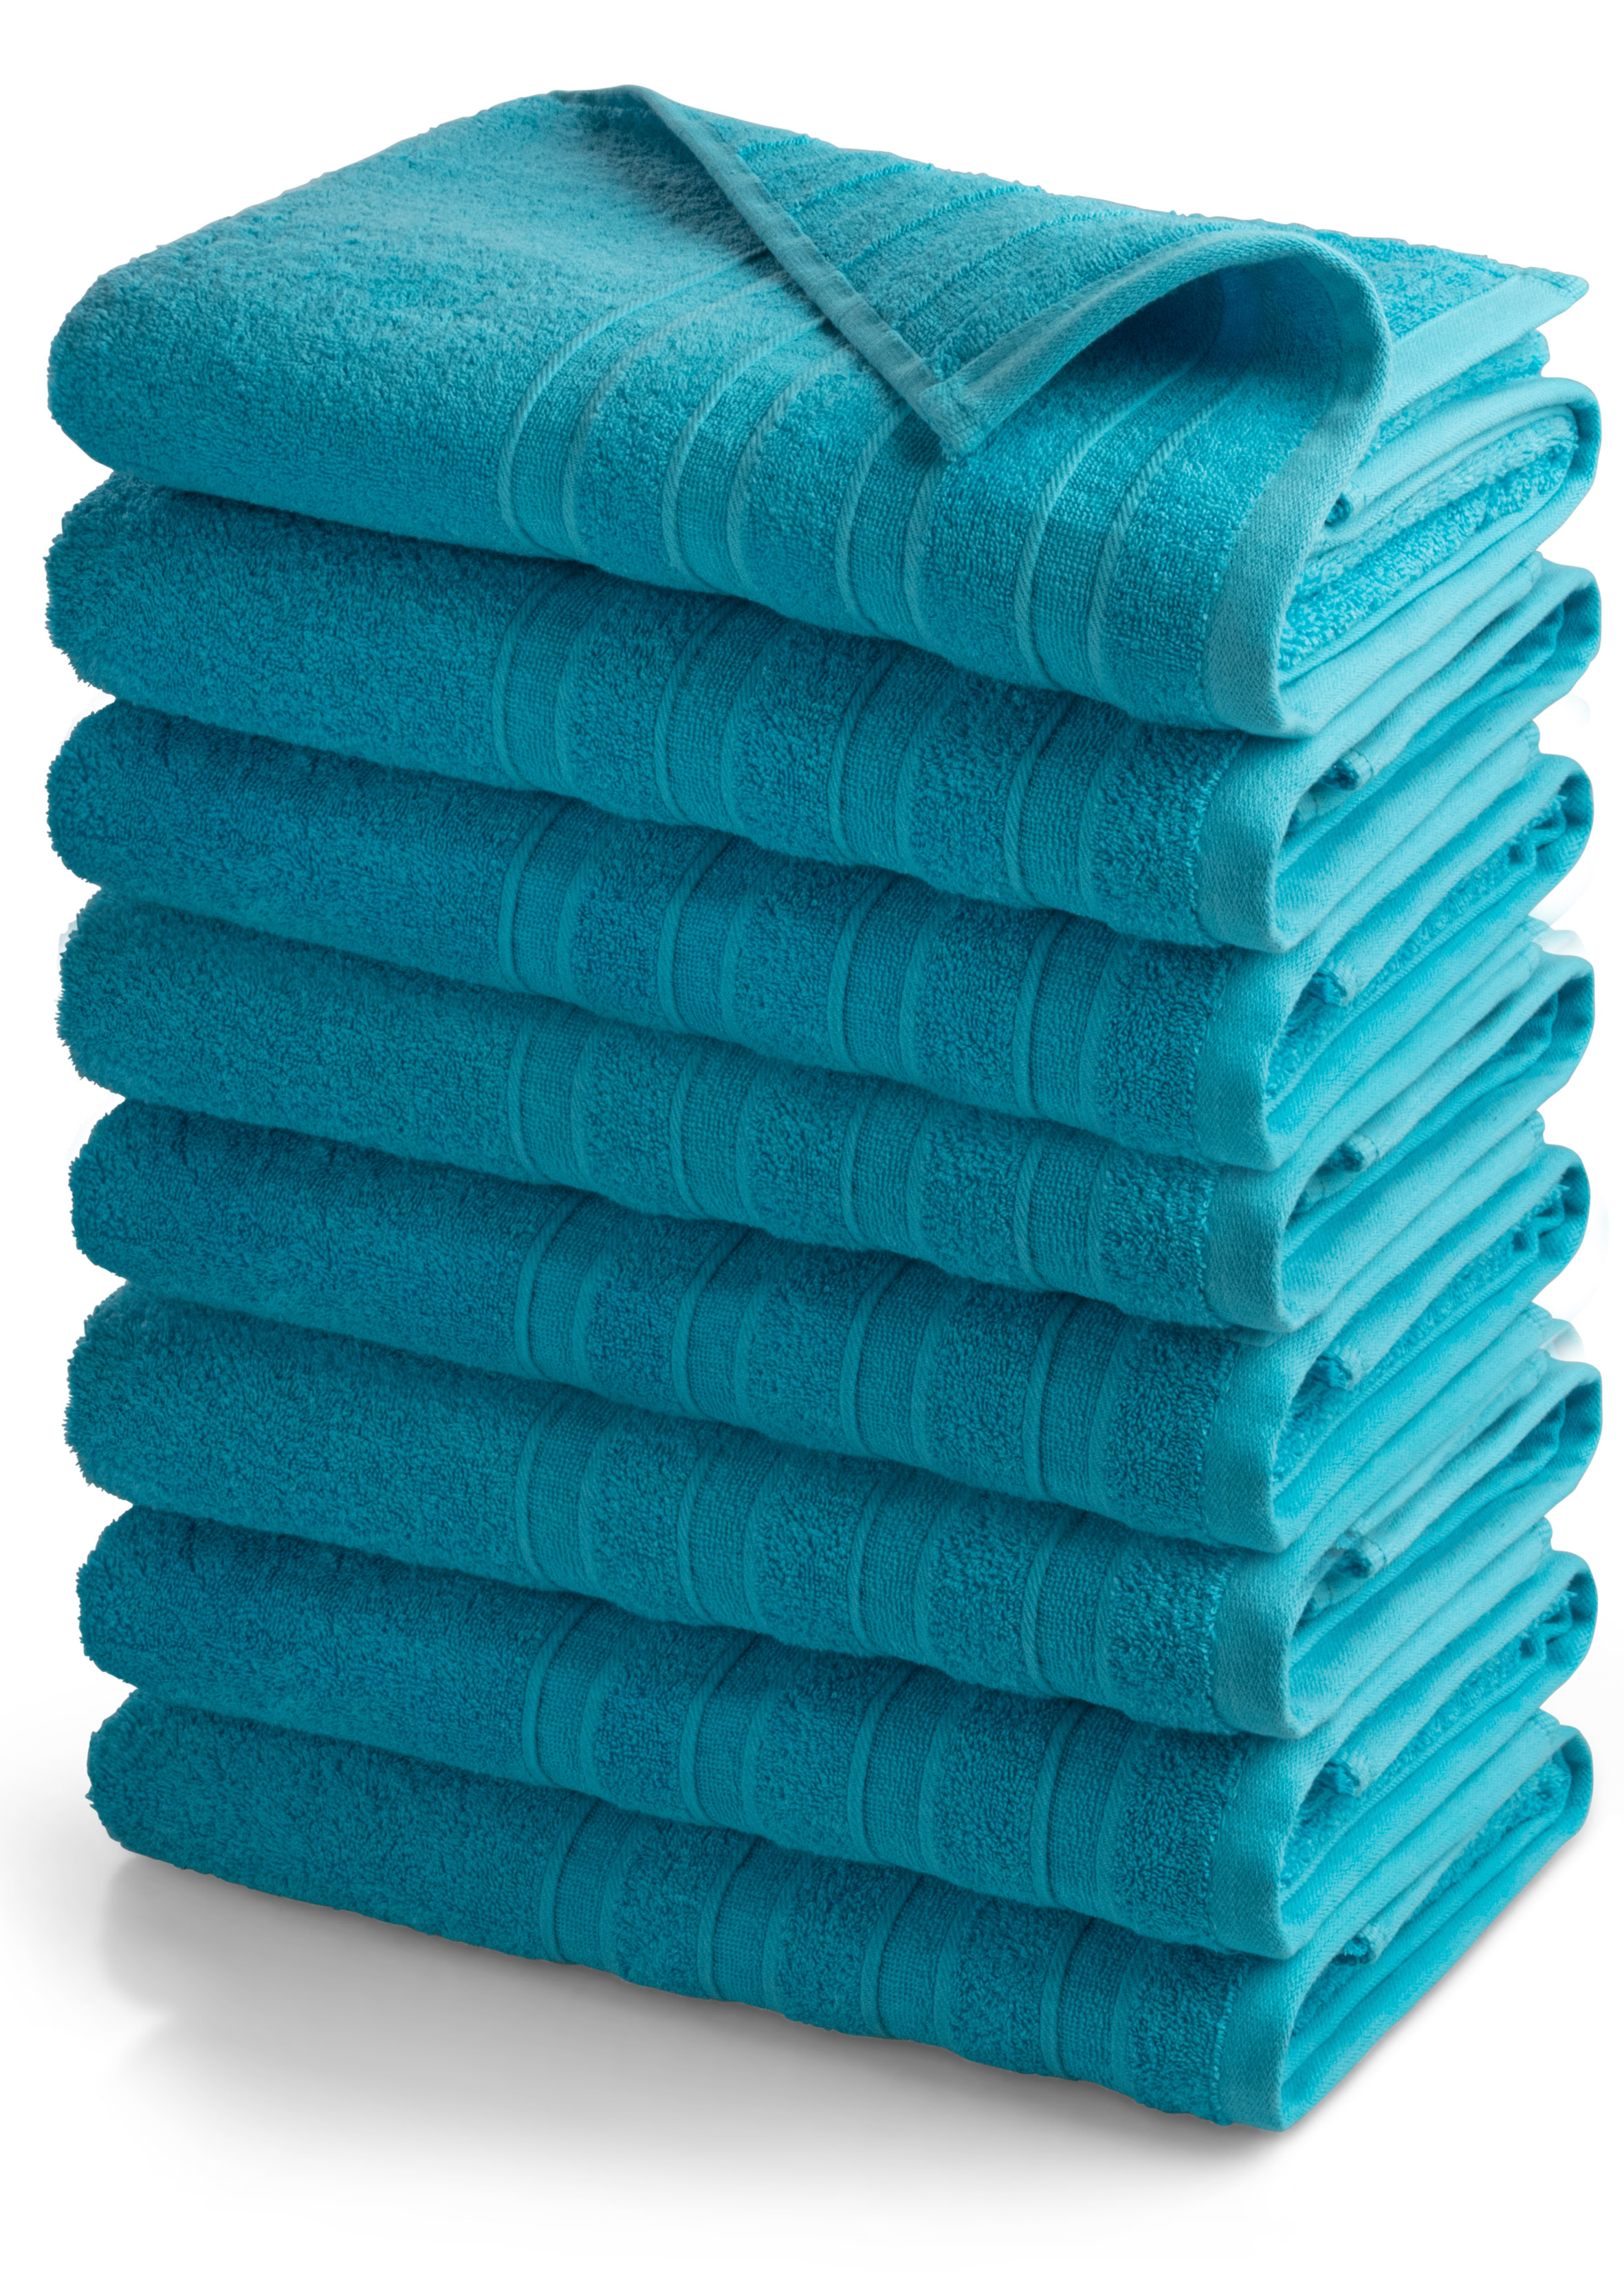 Krijg de beste deal met onze handdoekenset sale